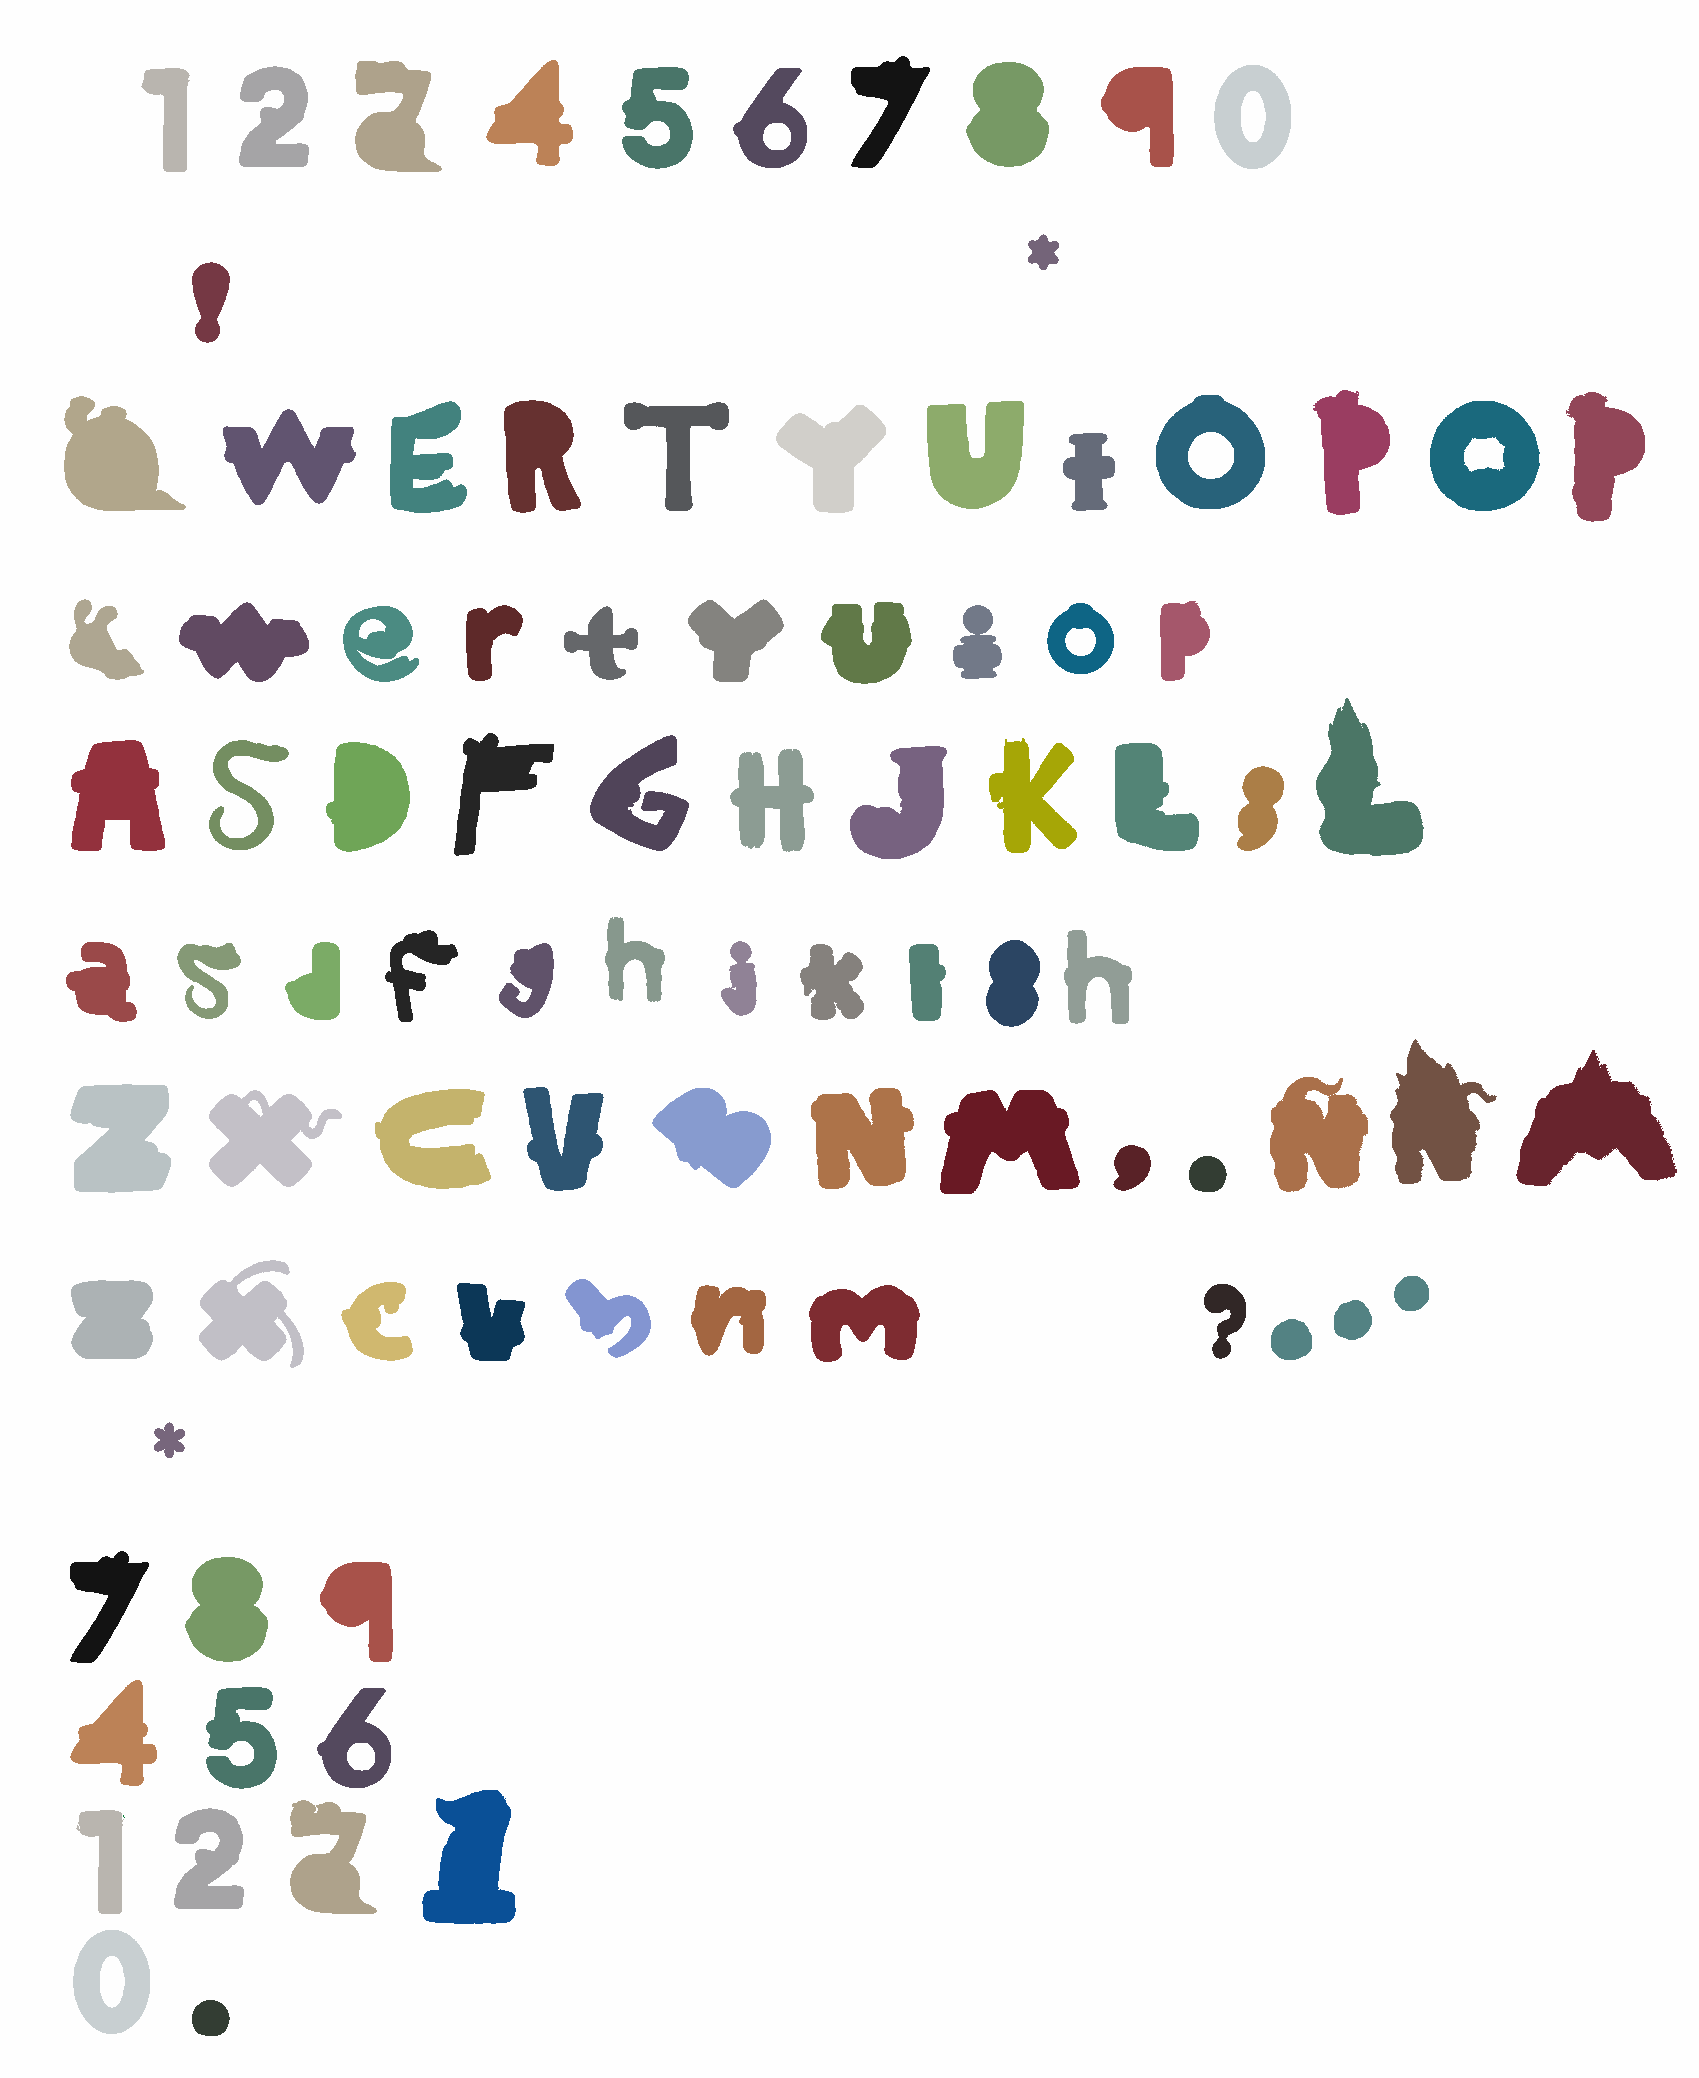 Alphabet Lore Lowercase In Merch Style by aidasanchez0212 on DeviantArt